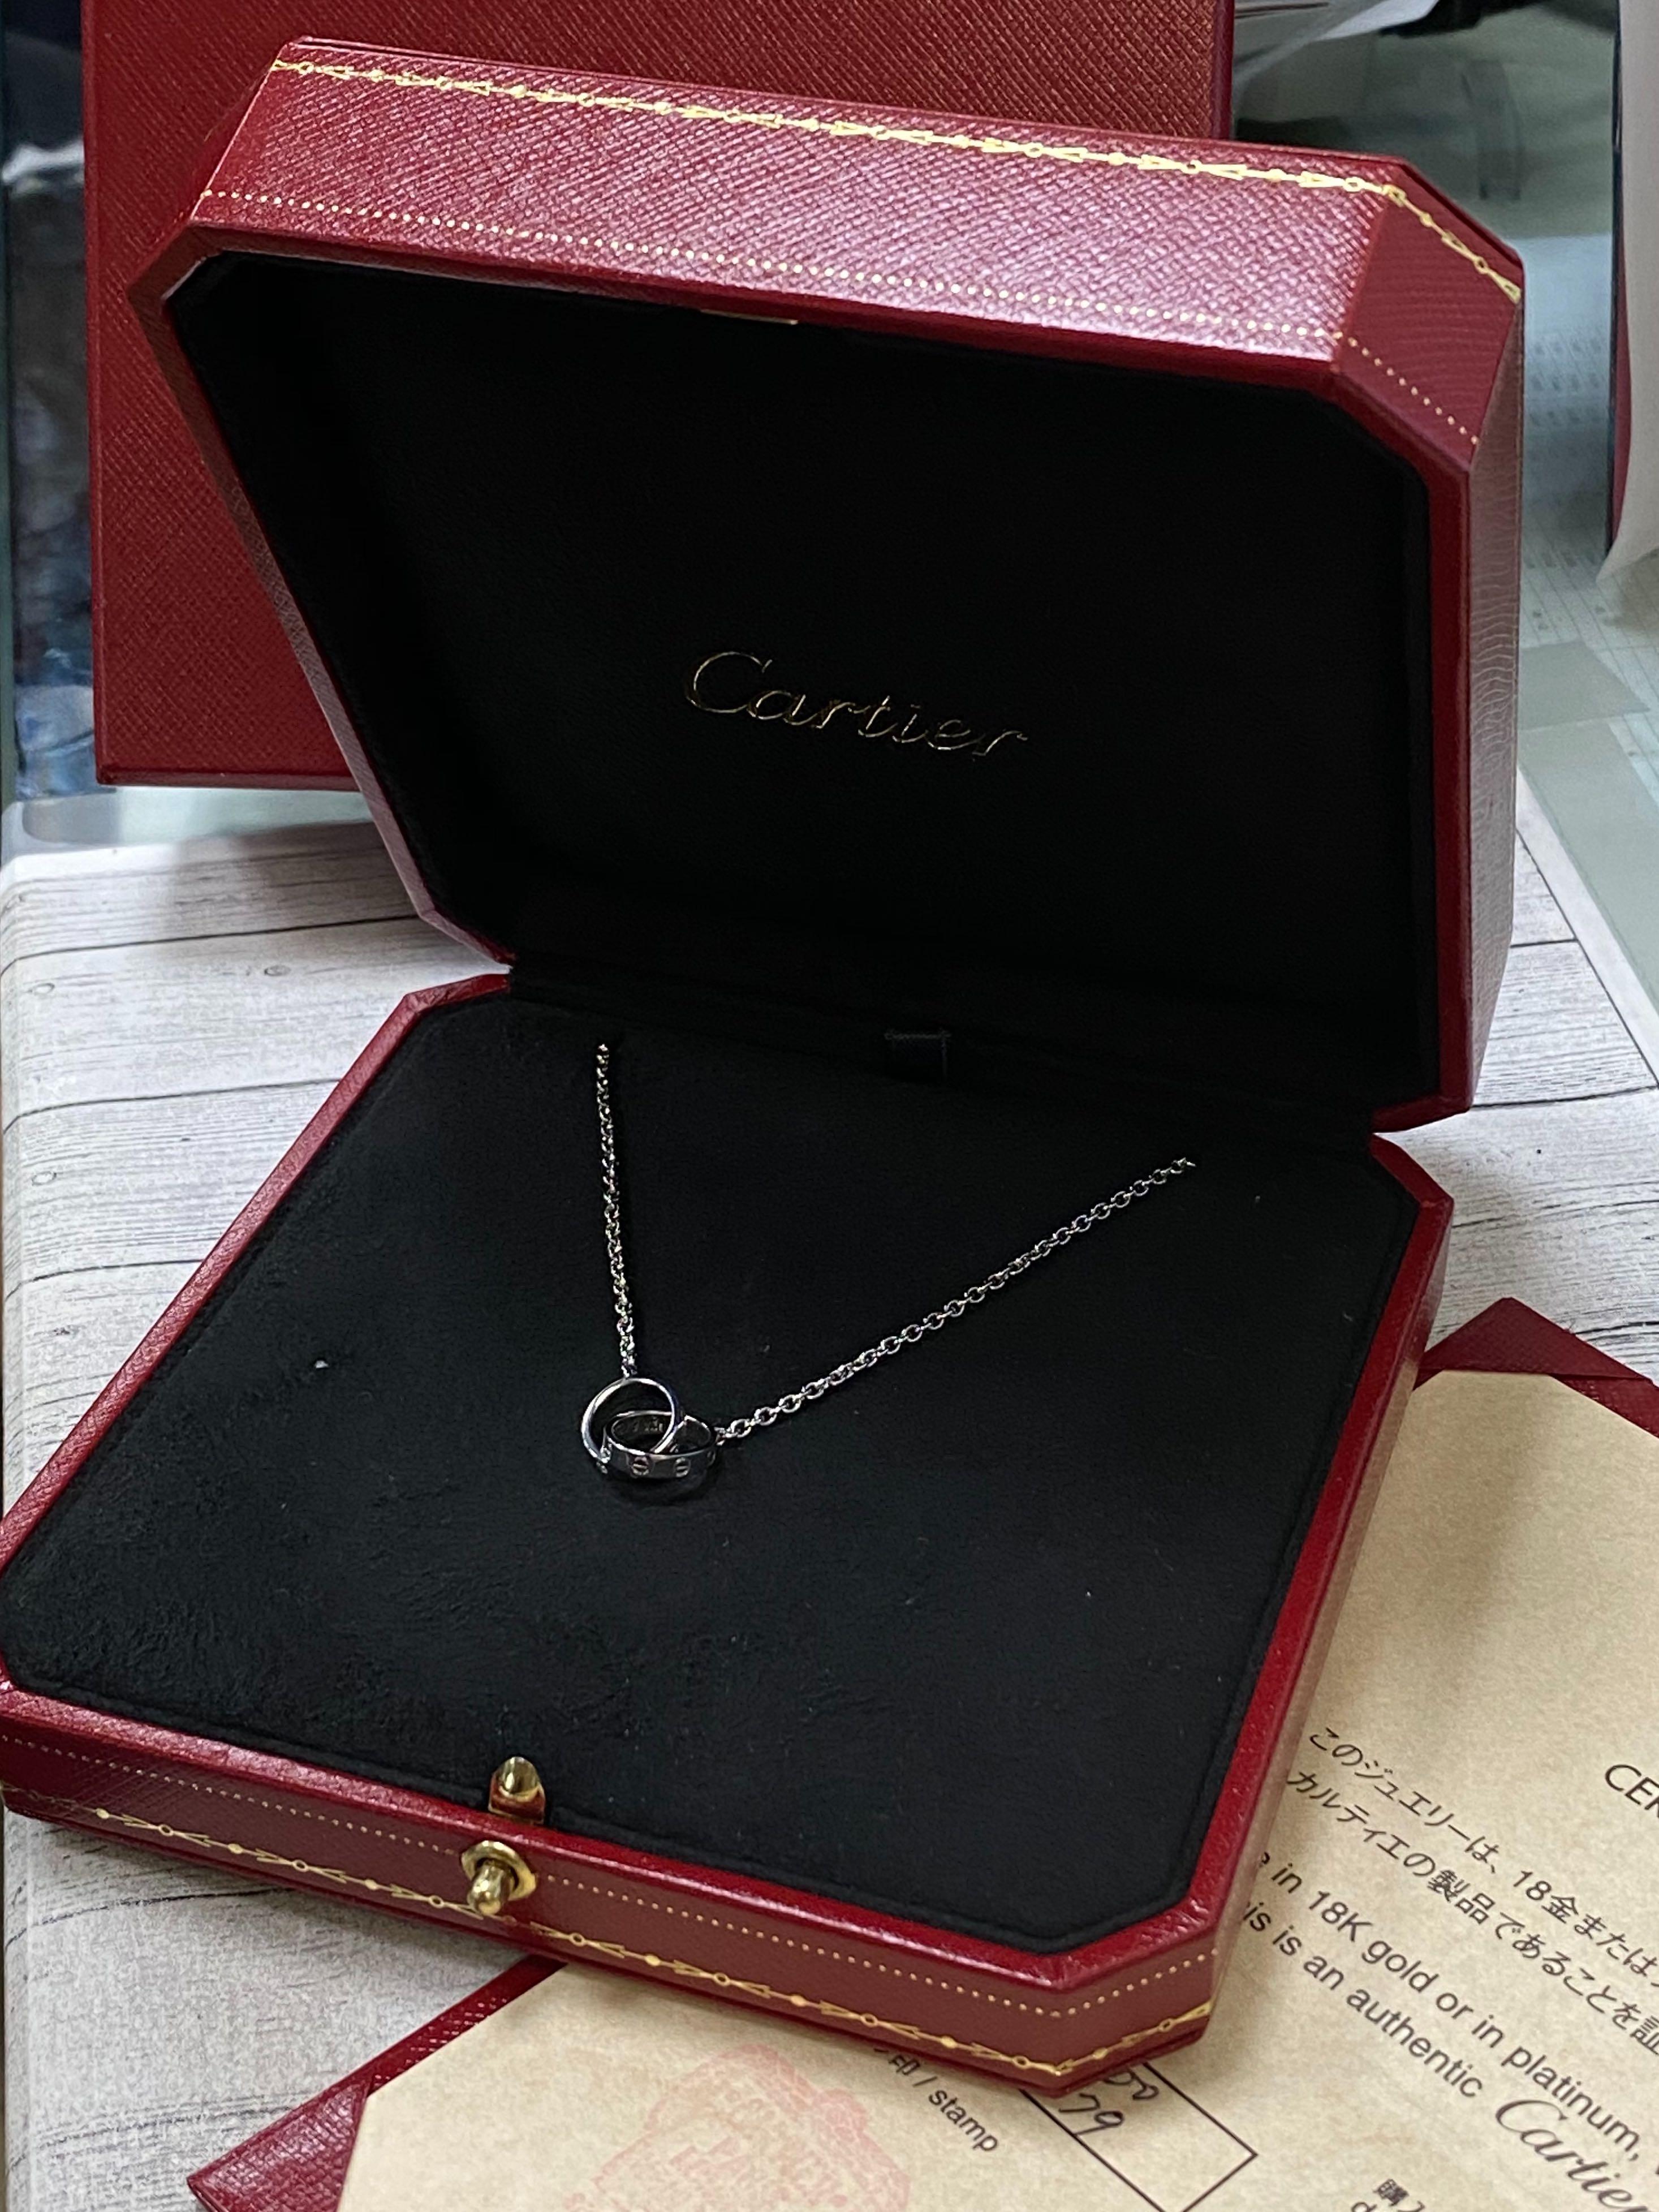 Cartier 18 Karat White Gold Love Necklace 4